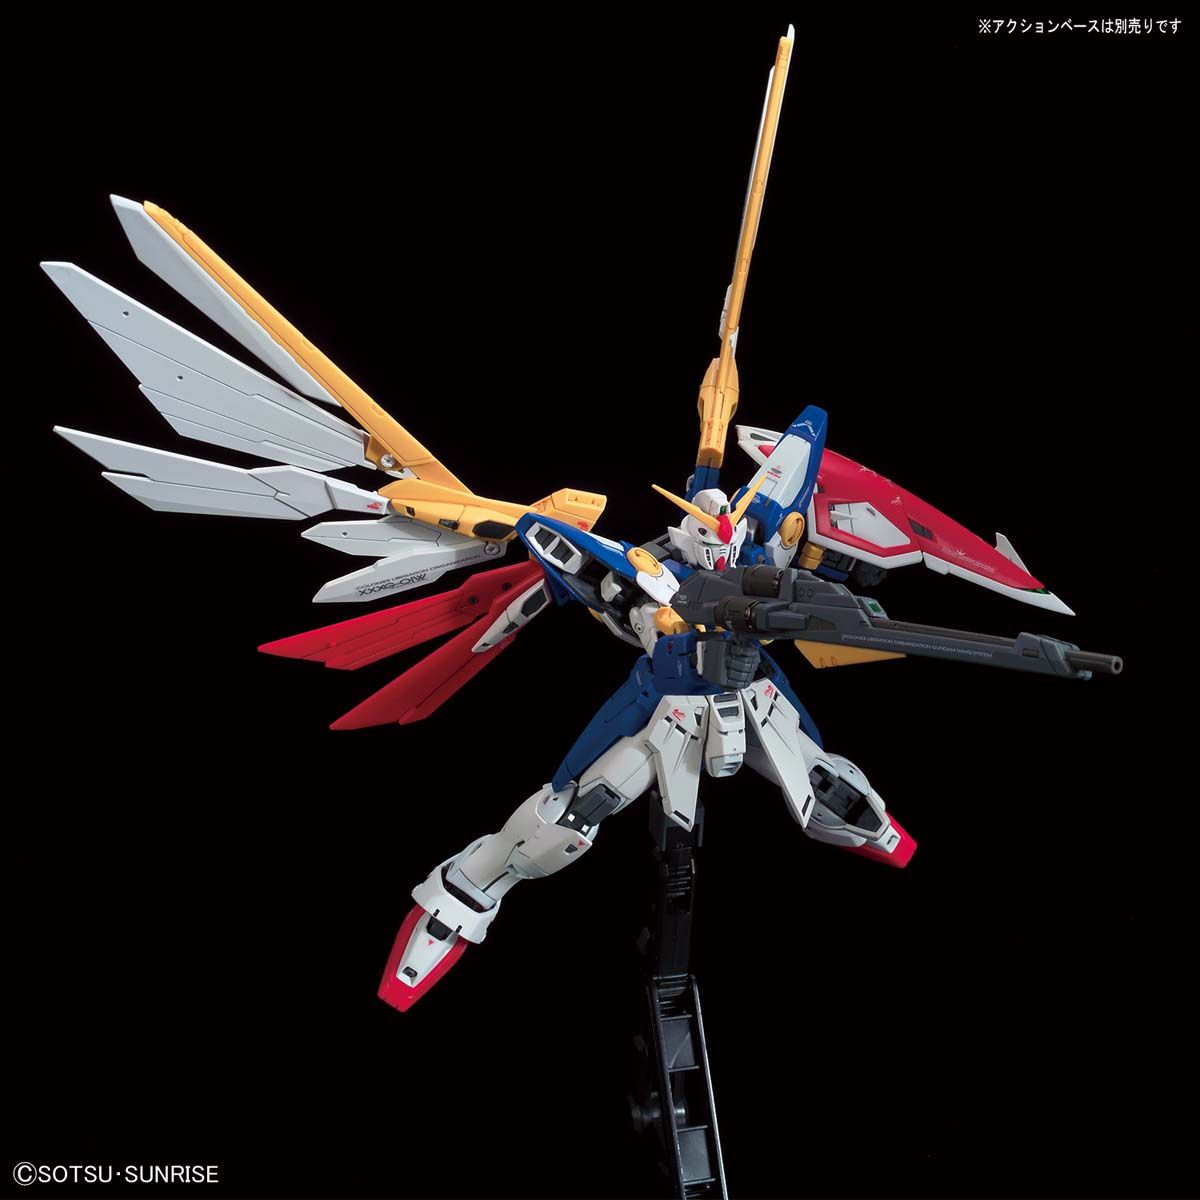 RG Wing Gundam 1/144 (Bandai)